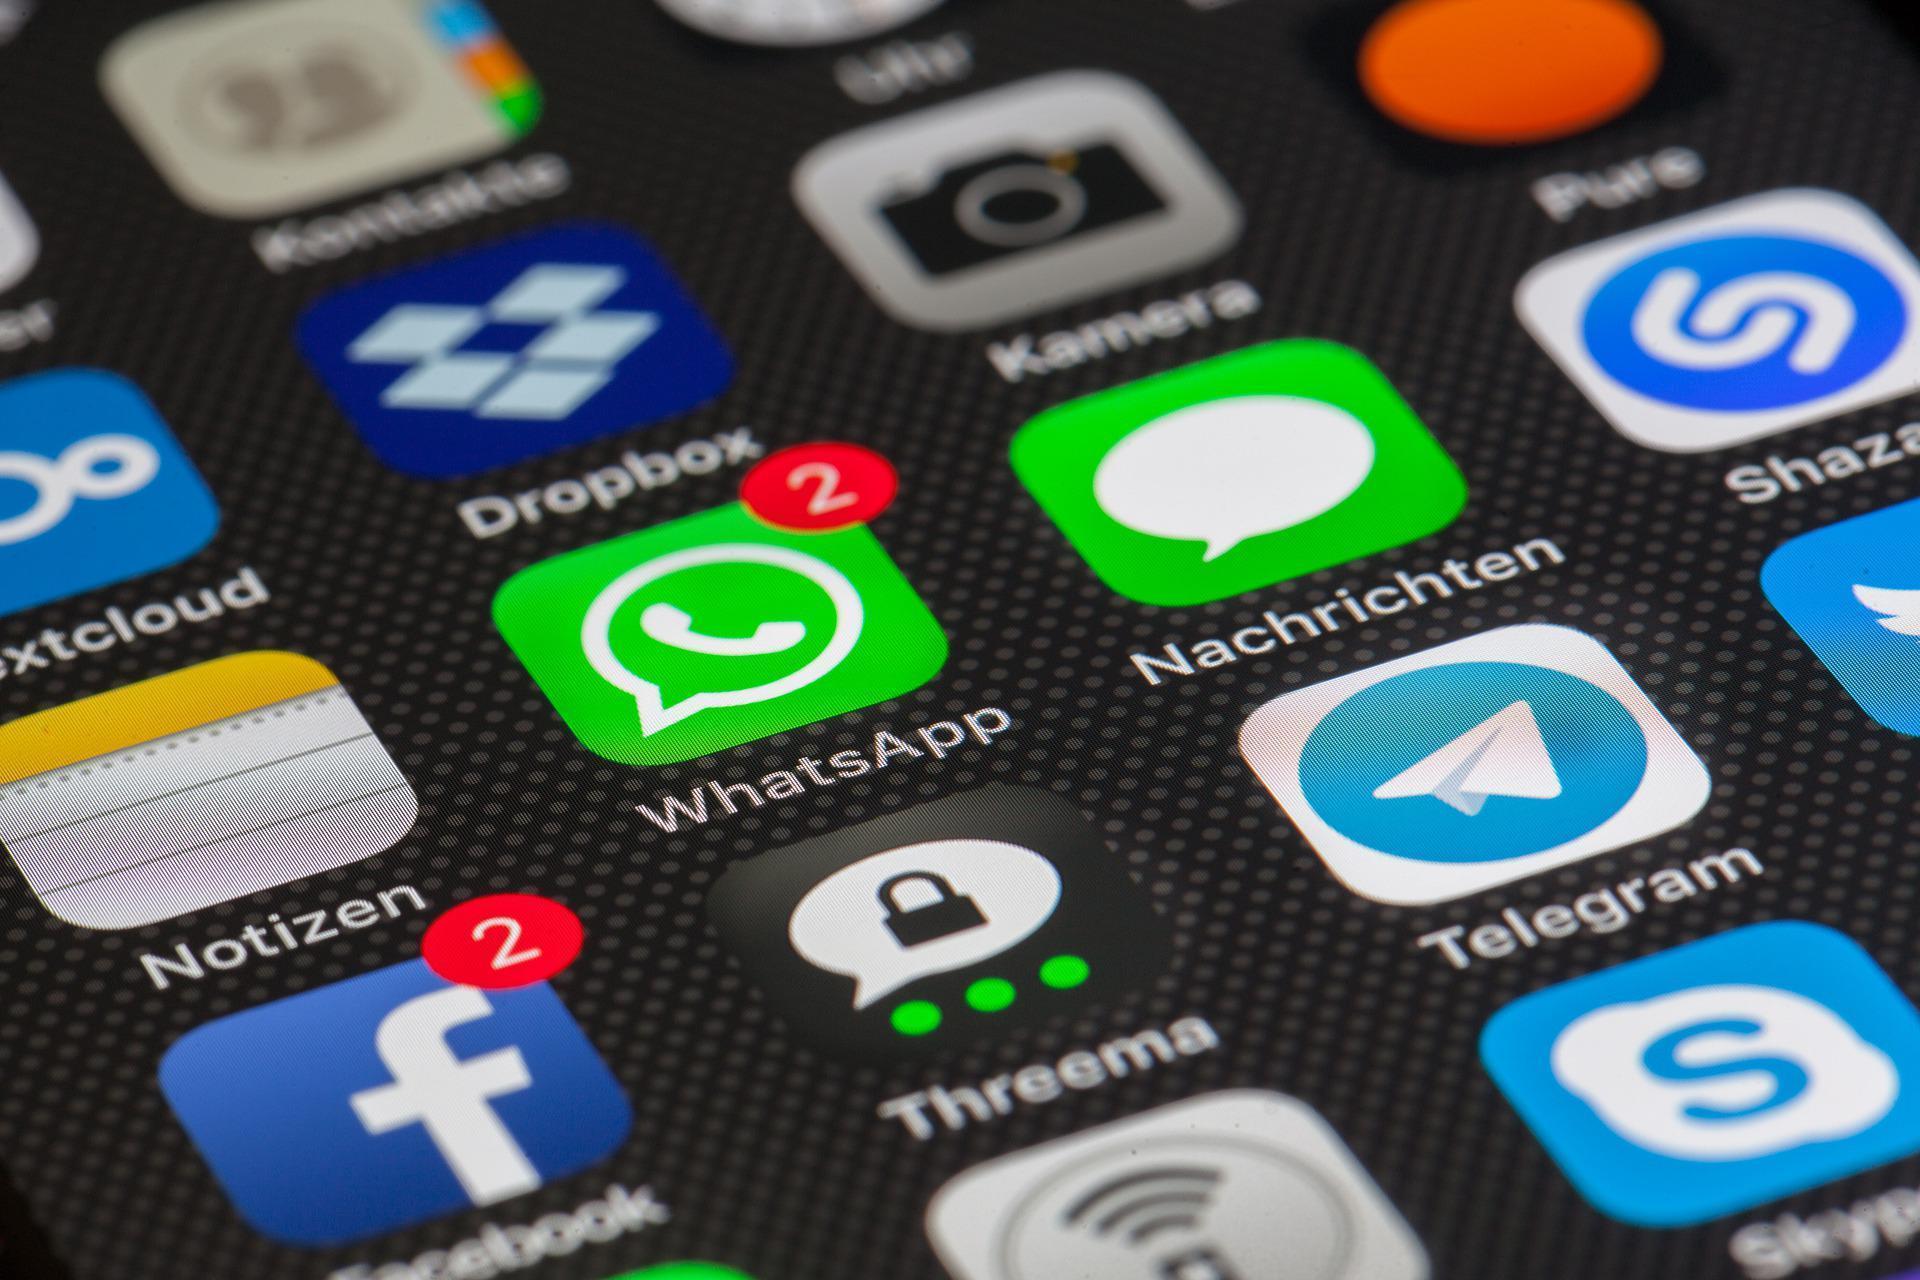 Whatsapp kullanıcılarını sevindirecek bir uygulama başlatıyor